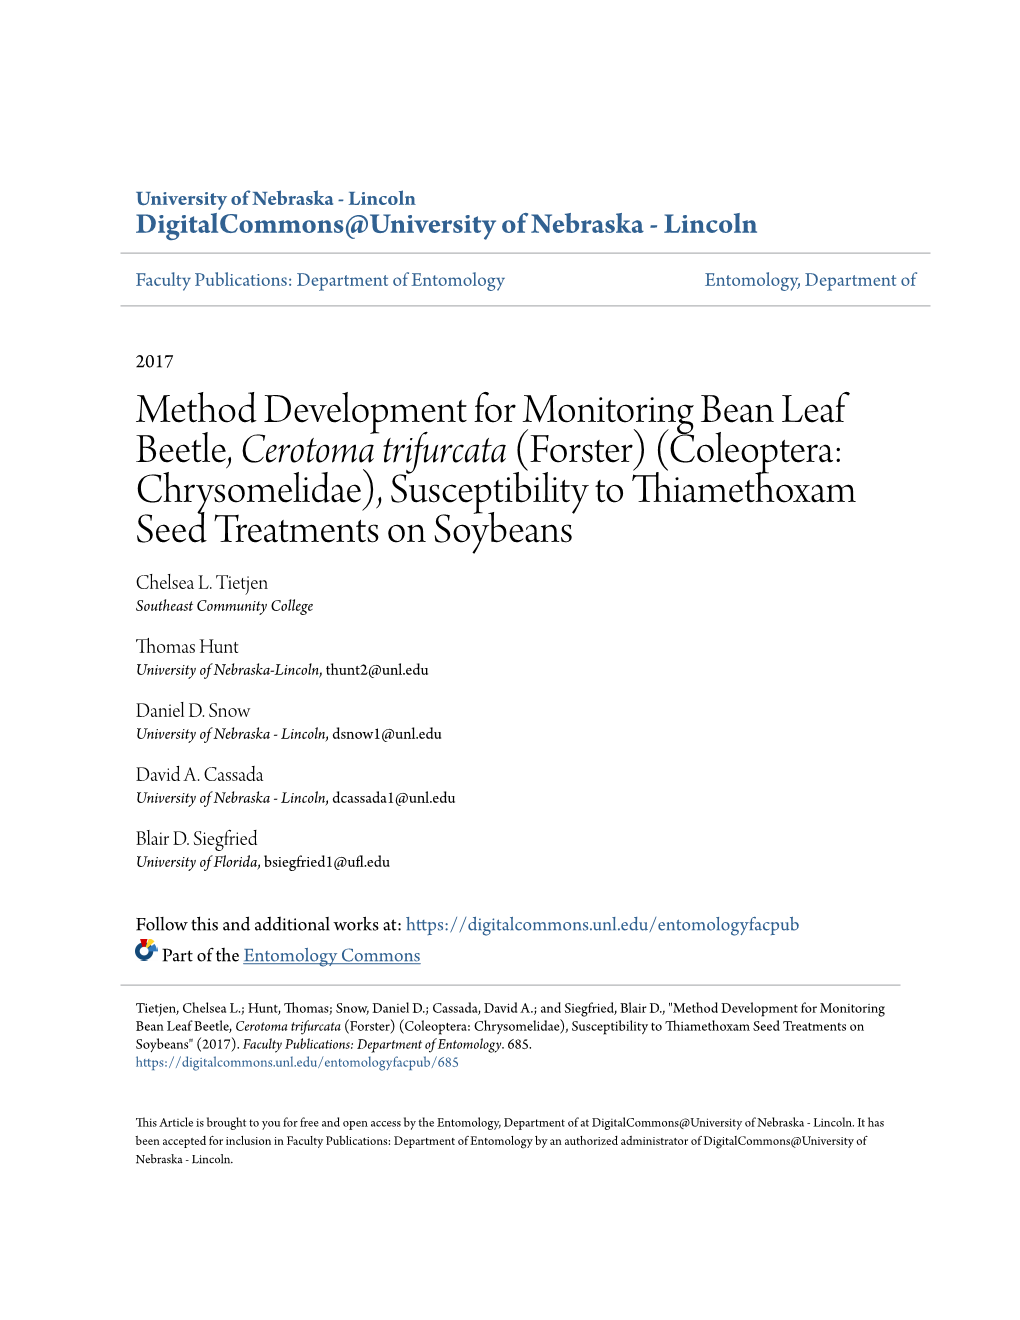 Method Development for Monitoring Bean Leaf Beetle, &lt;I&gt;Cerotoma Trifurcata&lt;/I&gt;